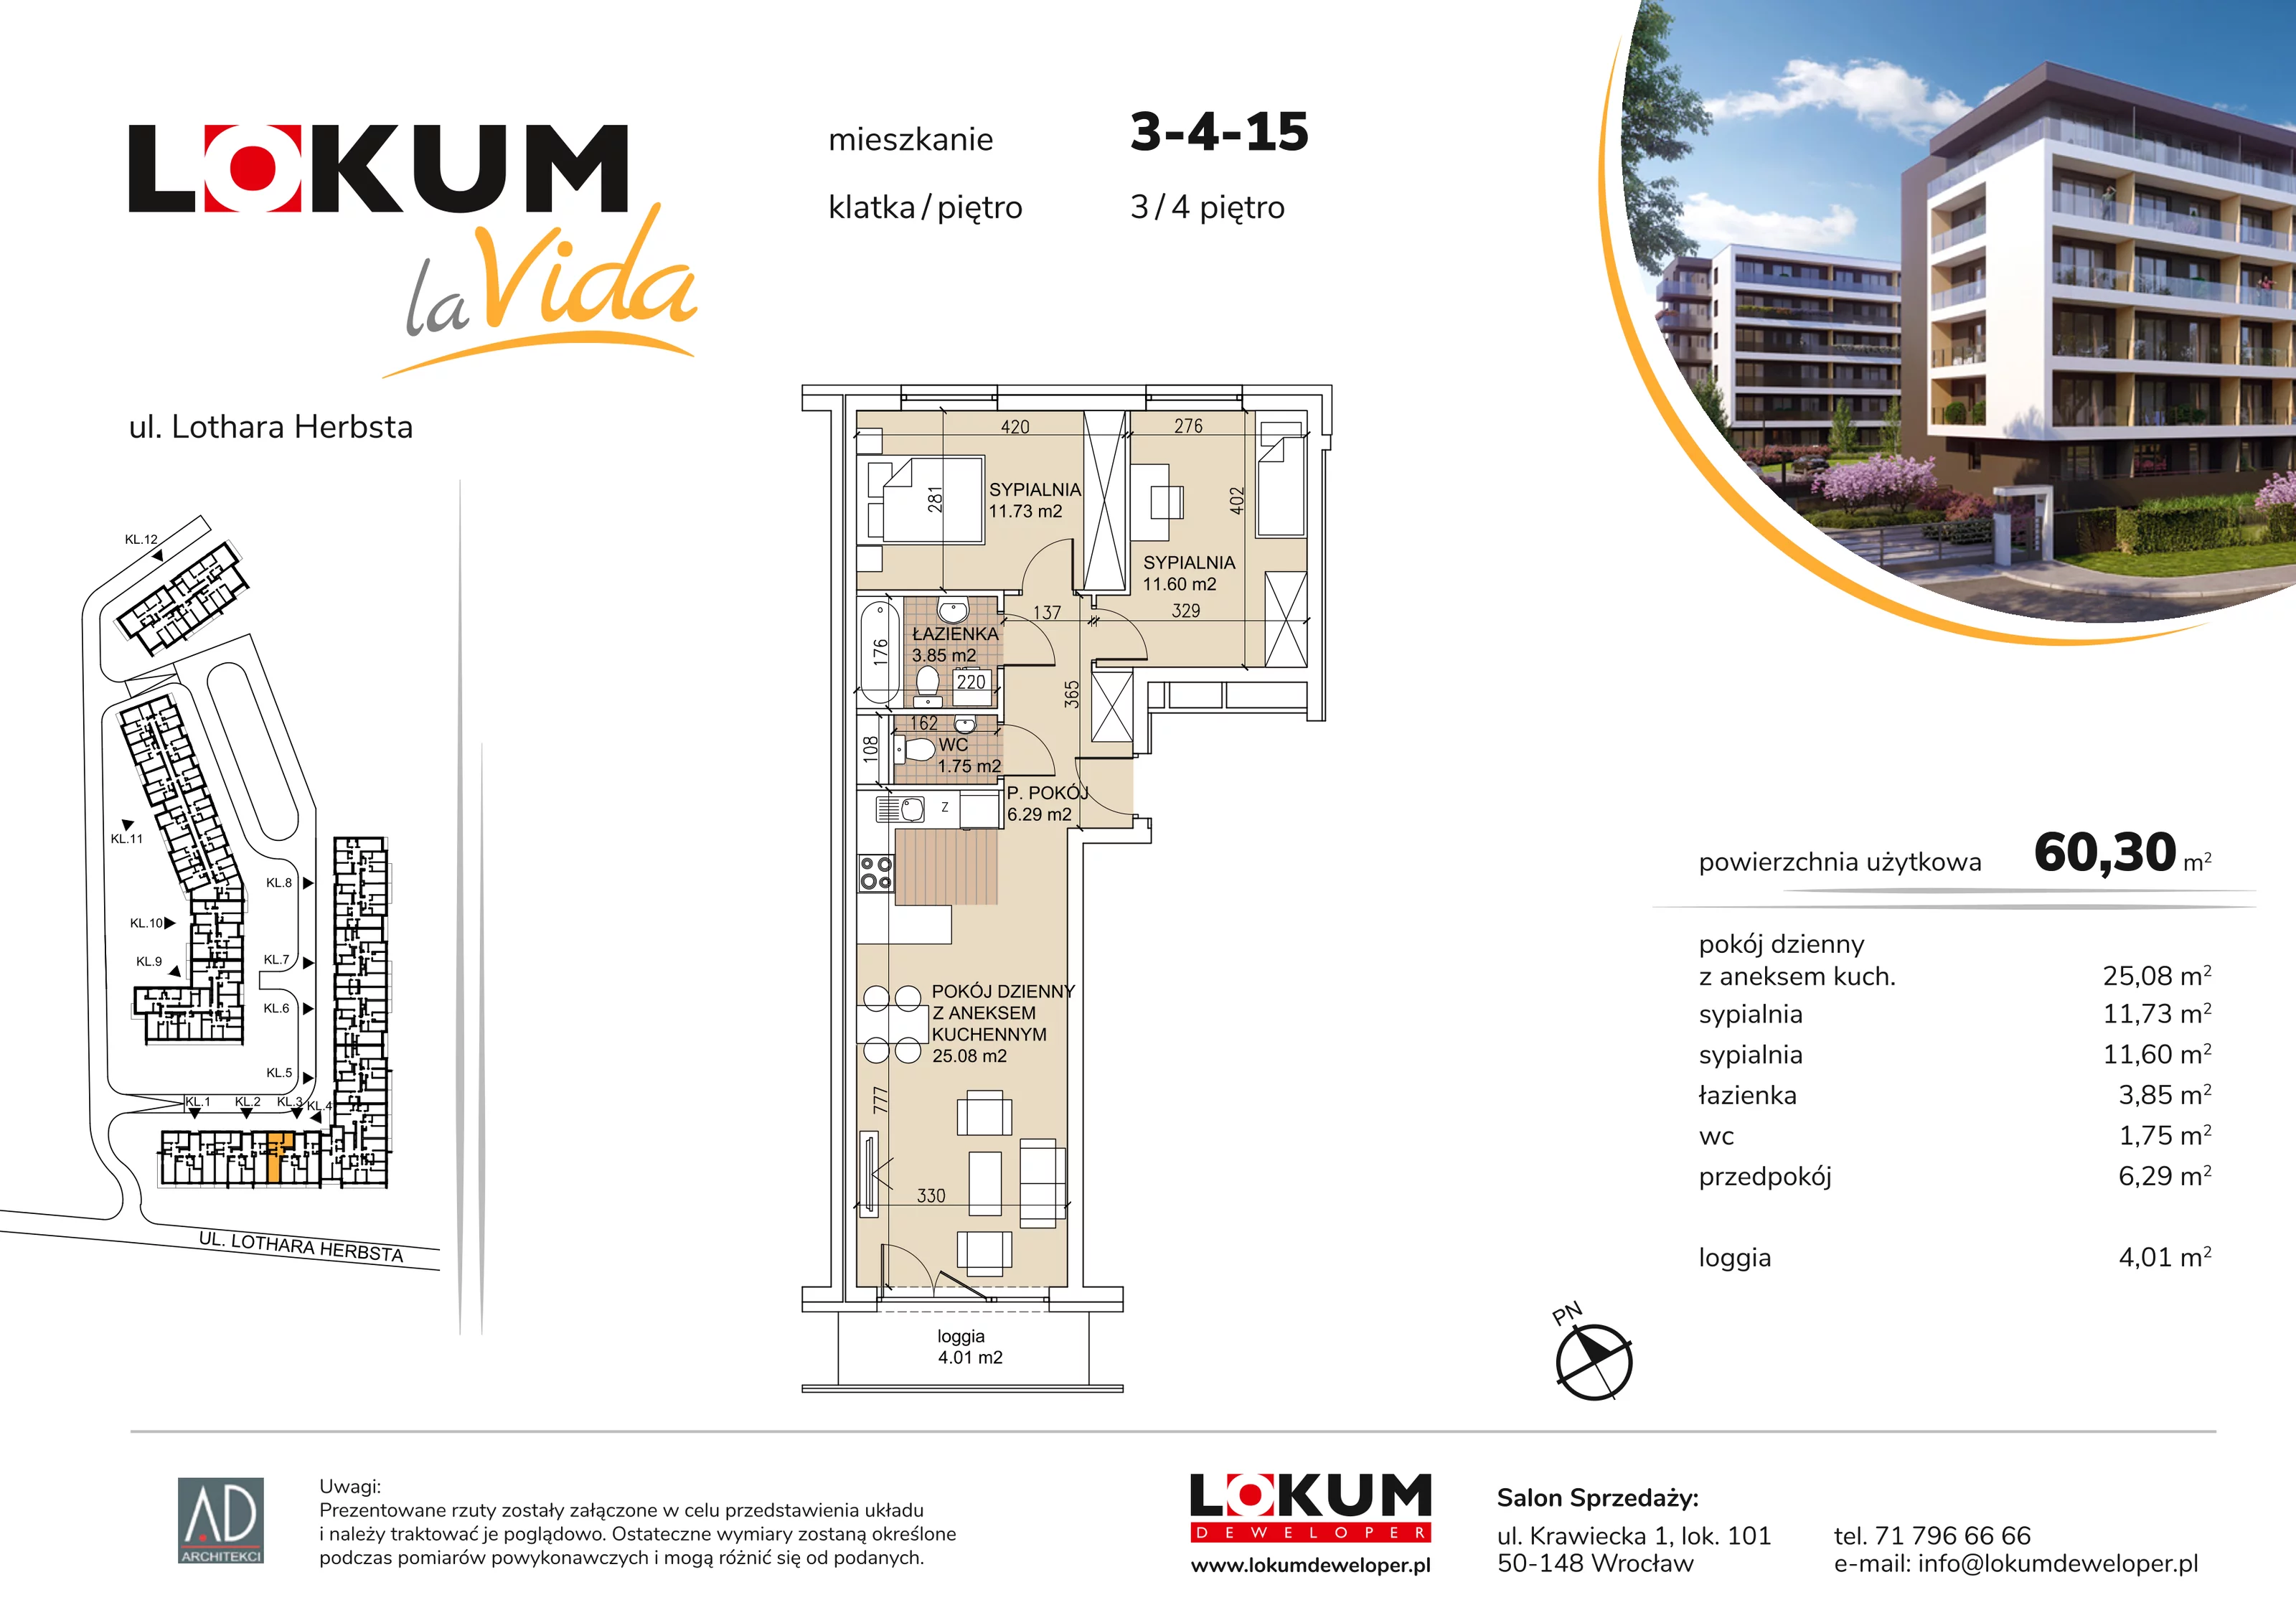 Mieszkanie 60,30 m², piętro 4, oferta nr 3-4-15, Lokum la Vida, Wrocław, Sołtysowice, ul. Lothara Herbsta